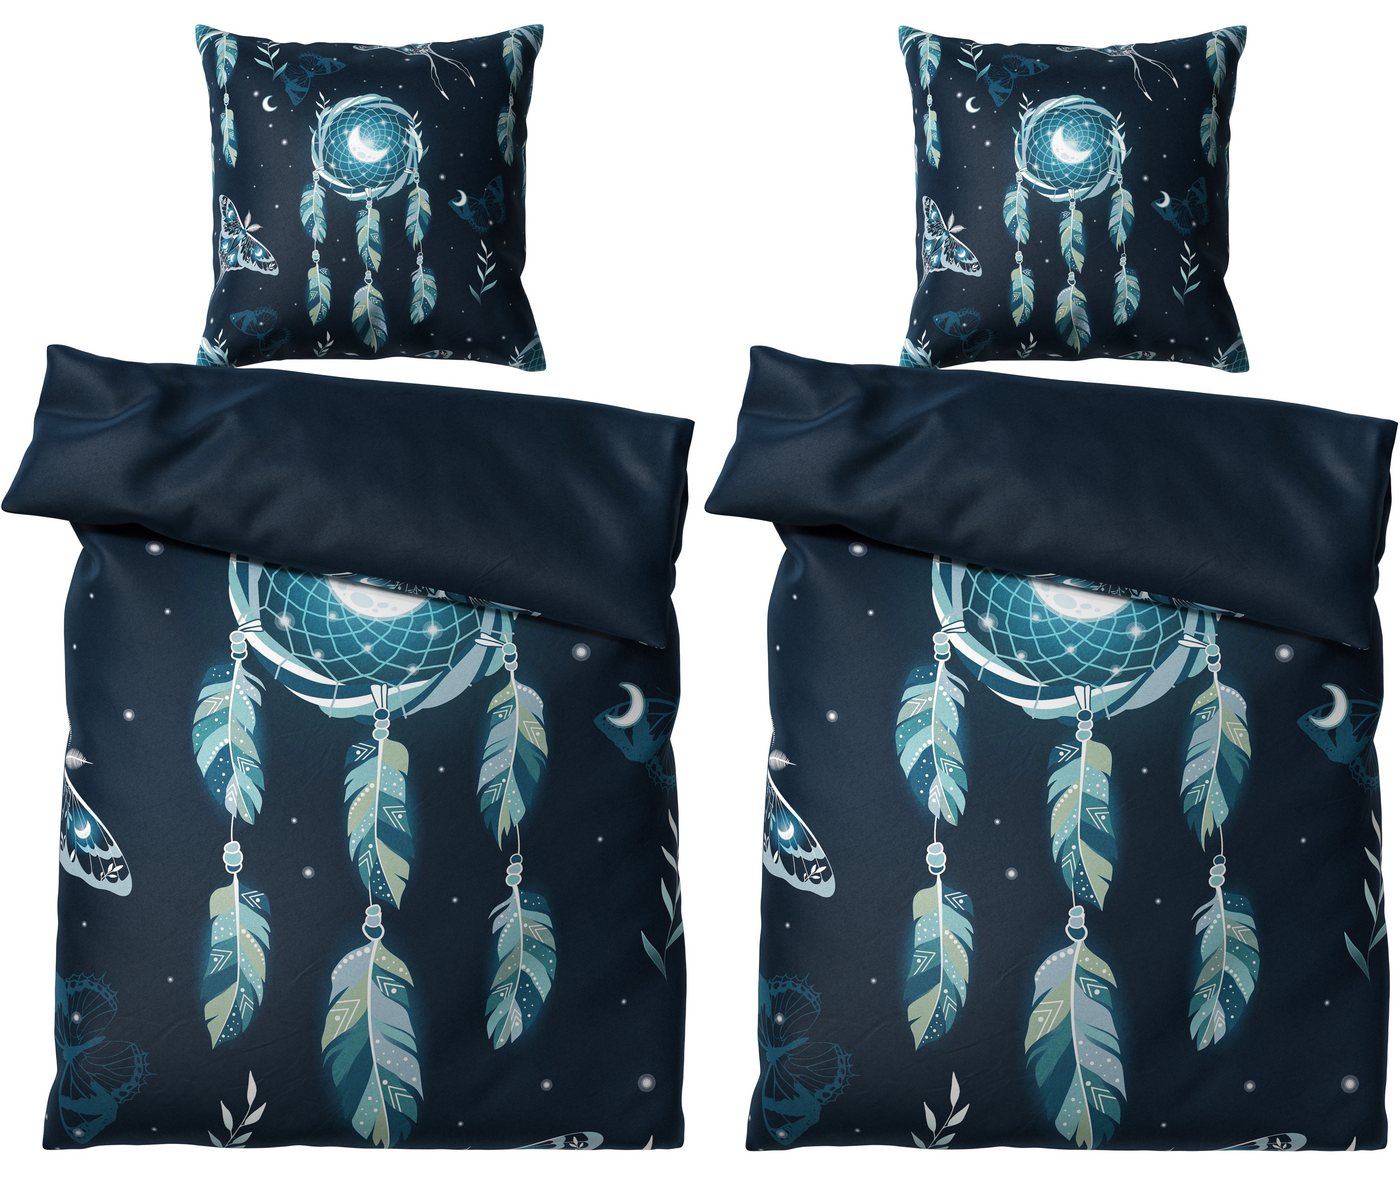 Bettwäsche Traumfänger 135x200 cm, Bettbezug und Kissenbezug, Sanilo, Baumwolle, 4 teilig, mit Reißverschluss von Sanilo